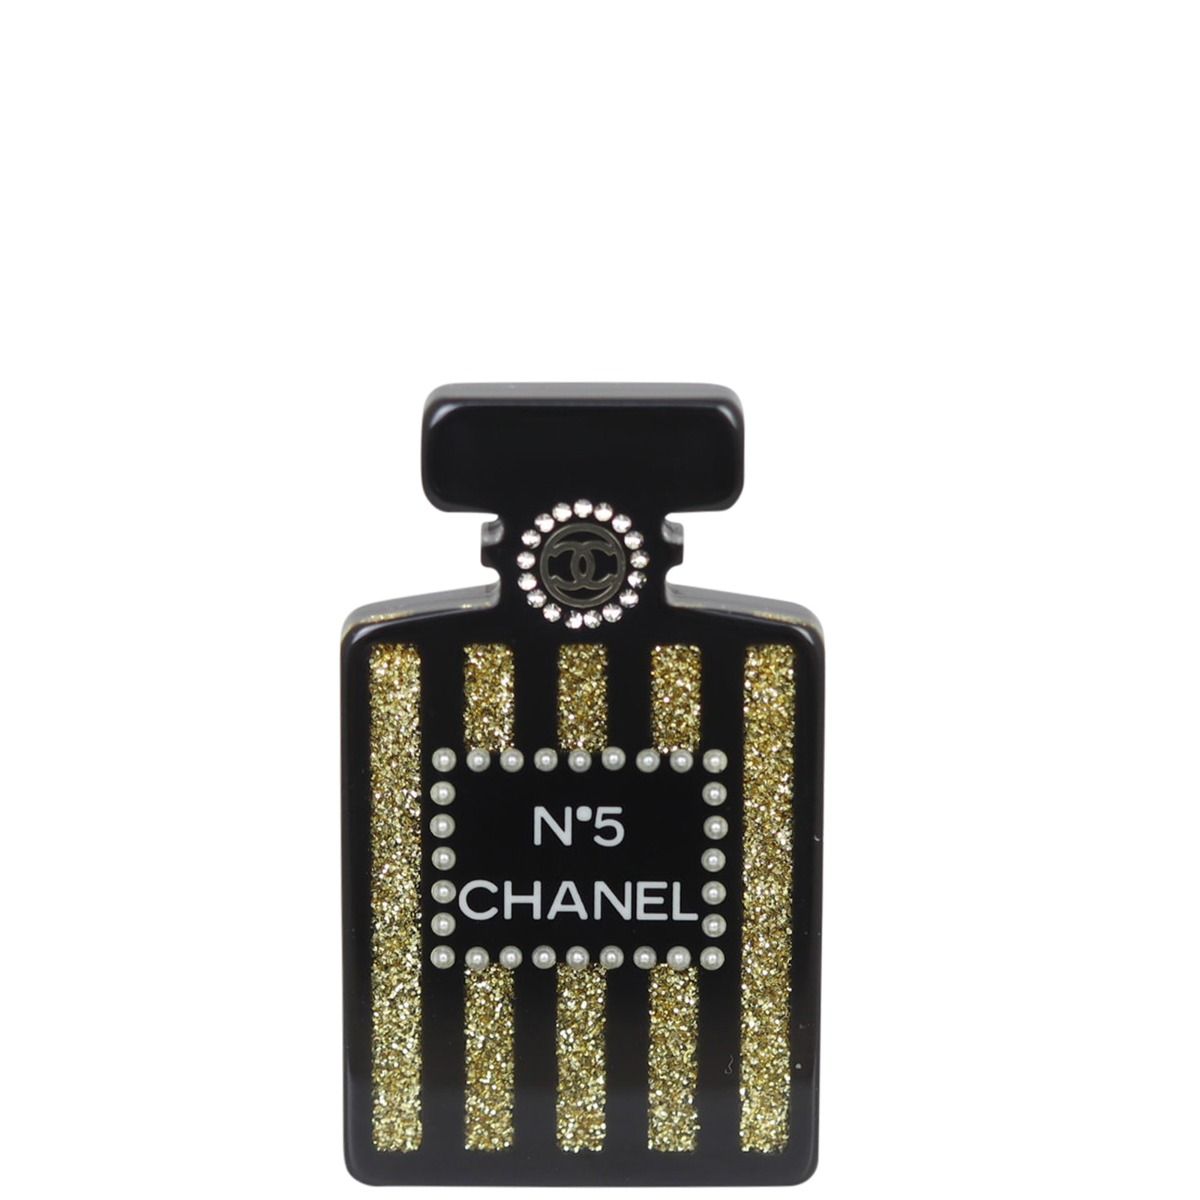 Chanel No.5 Bottle Brooch